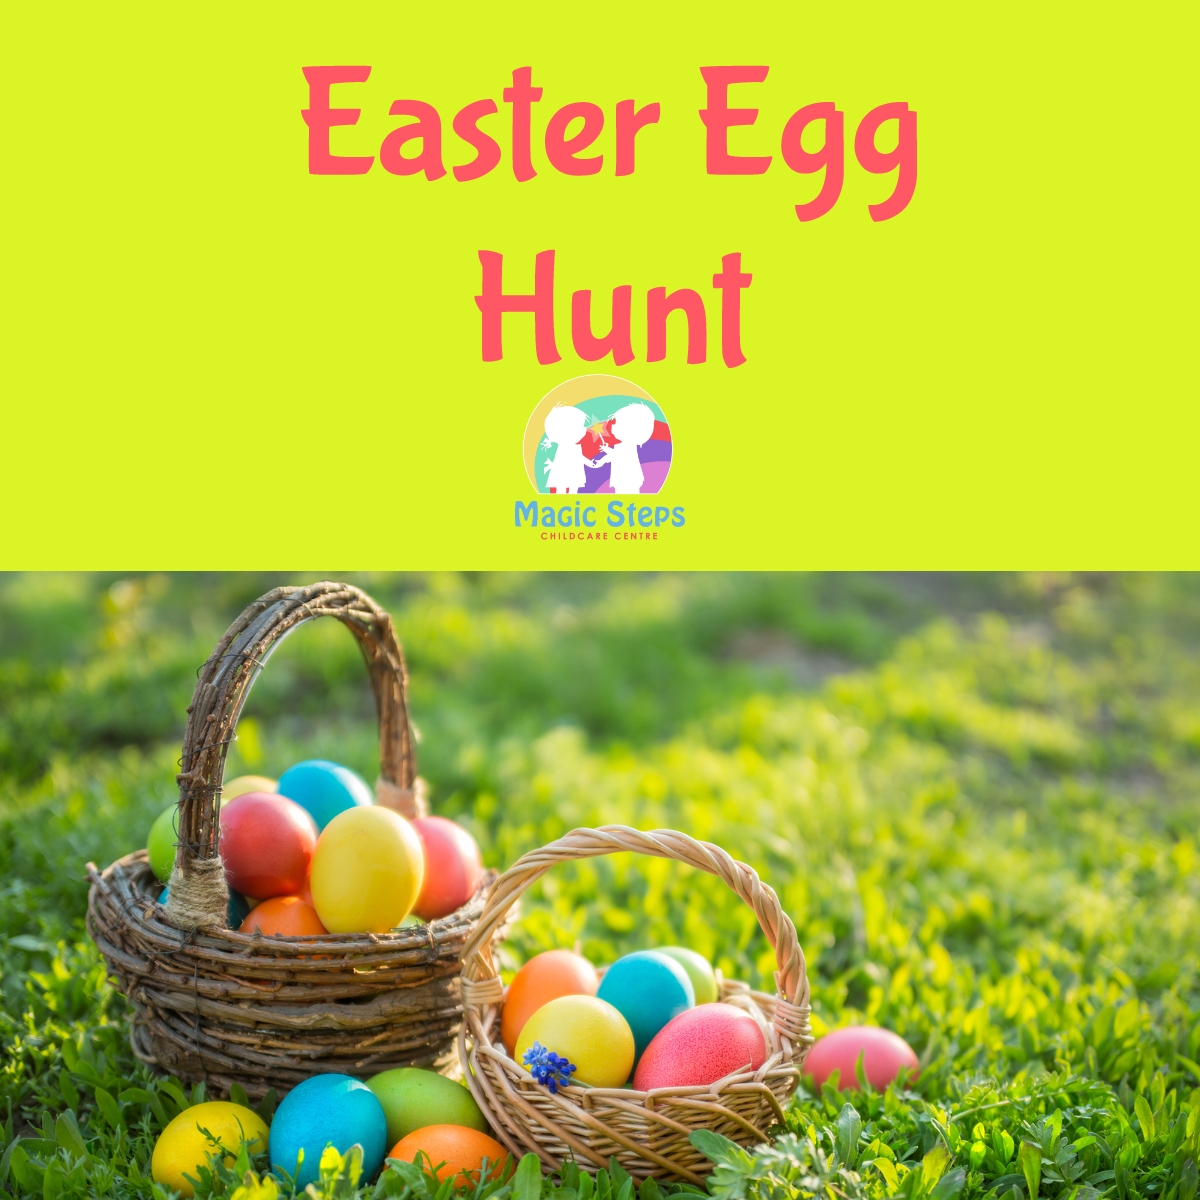 Easter Egg Hunt- Thursday 25th March